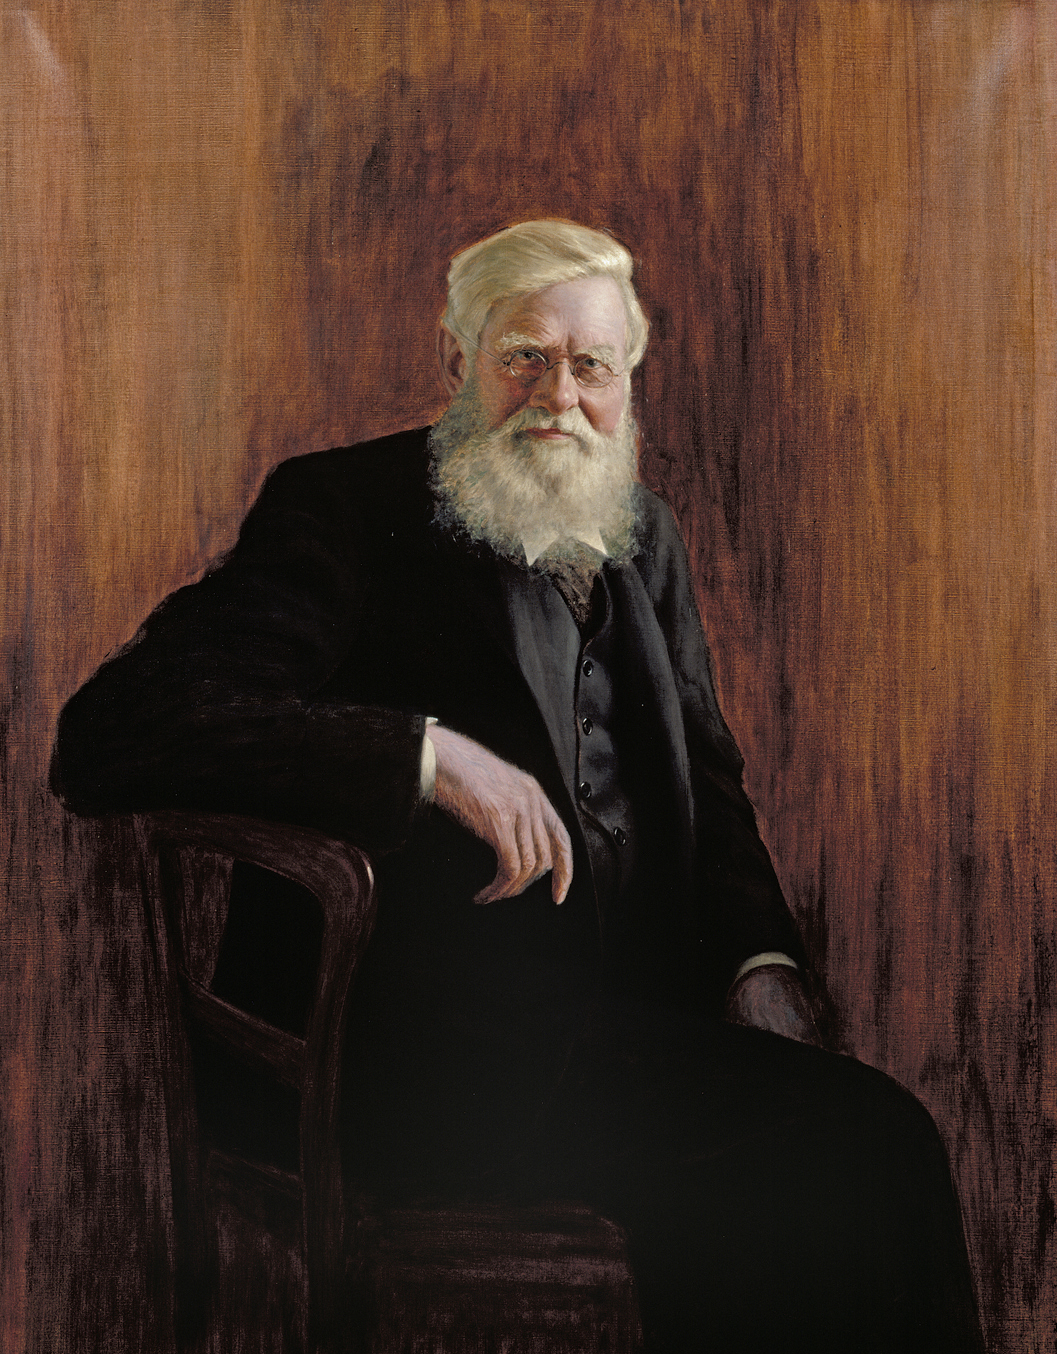 Alfred Russel Wallace portréja John William Beaufort 1923-as festményén, az Elliott & Fry fotóstúdióban készült 1903-as fénykép alapján